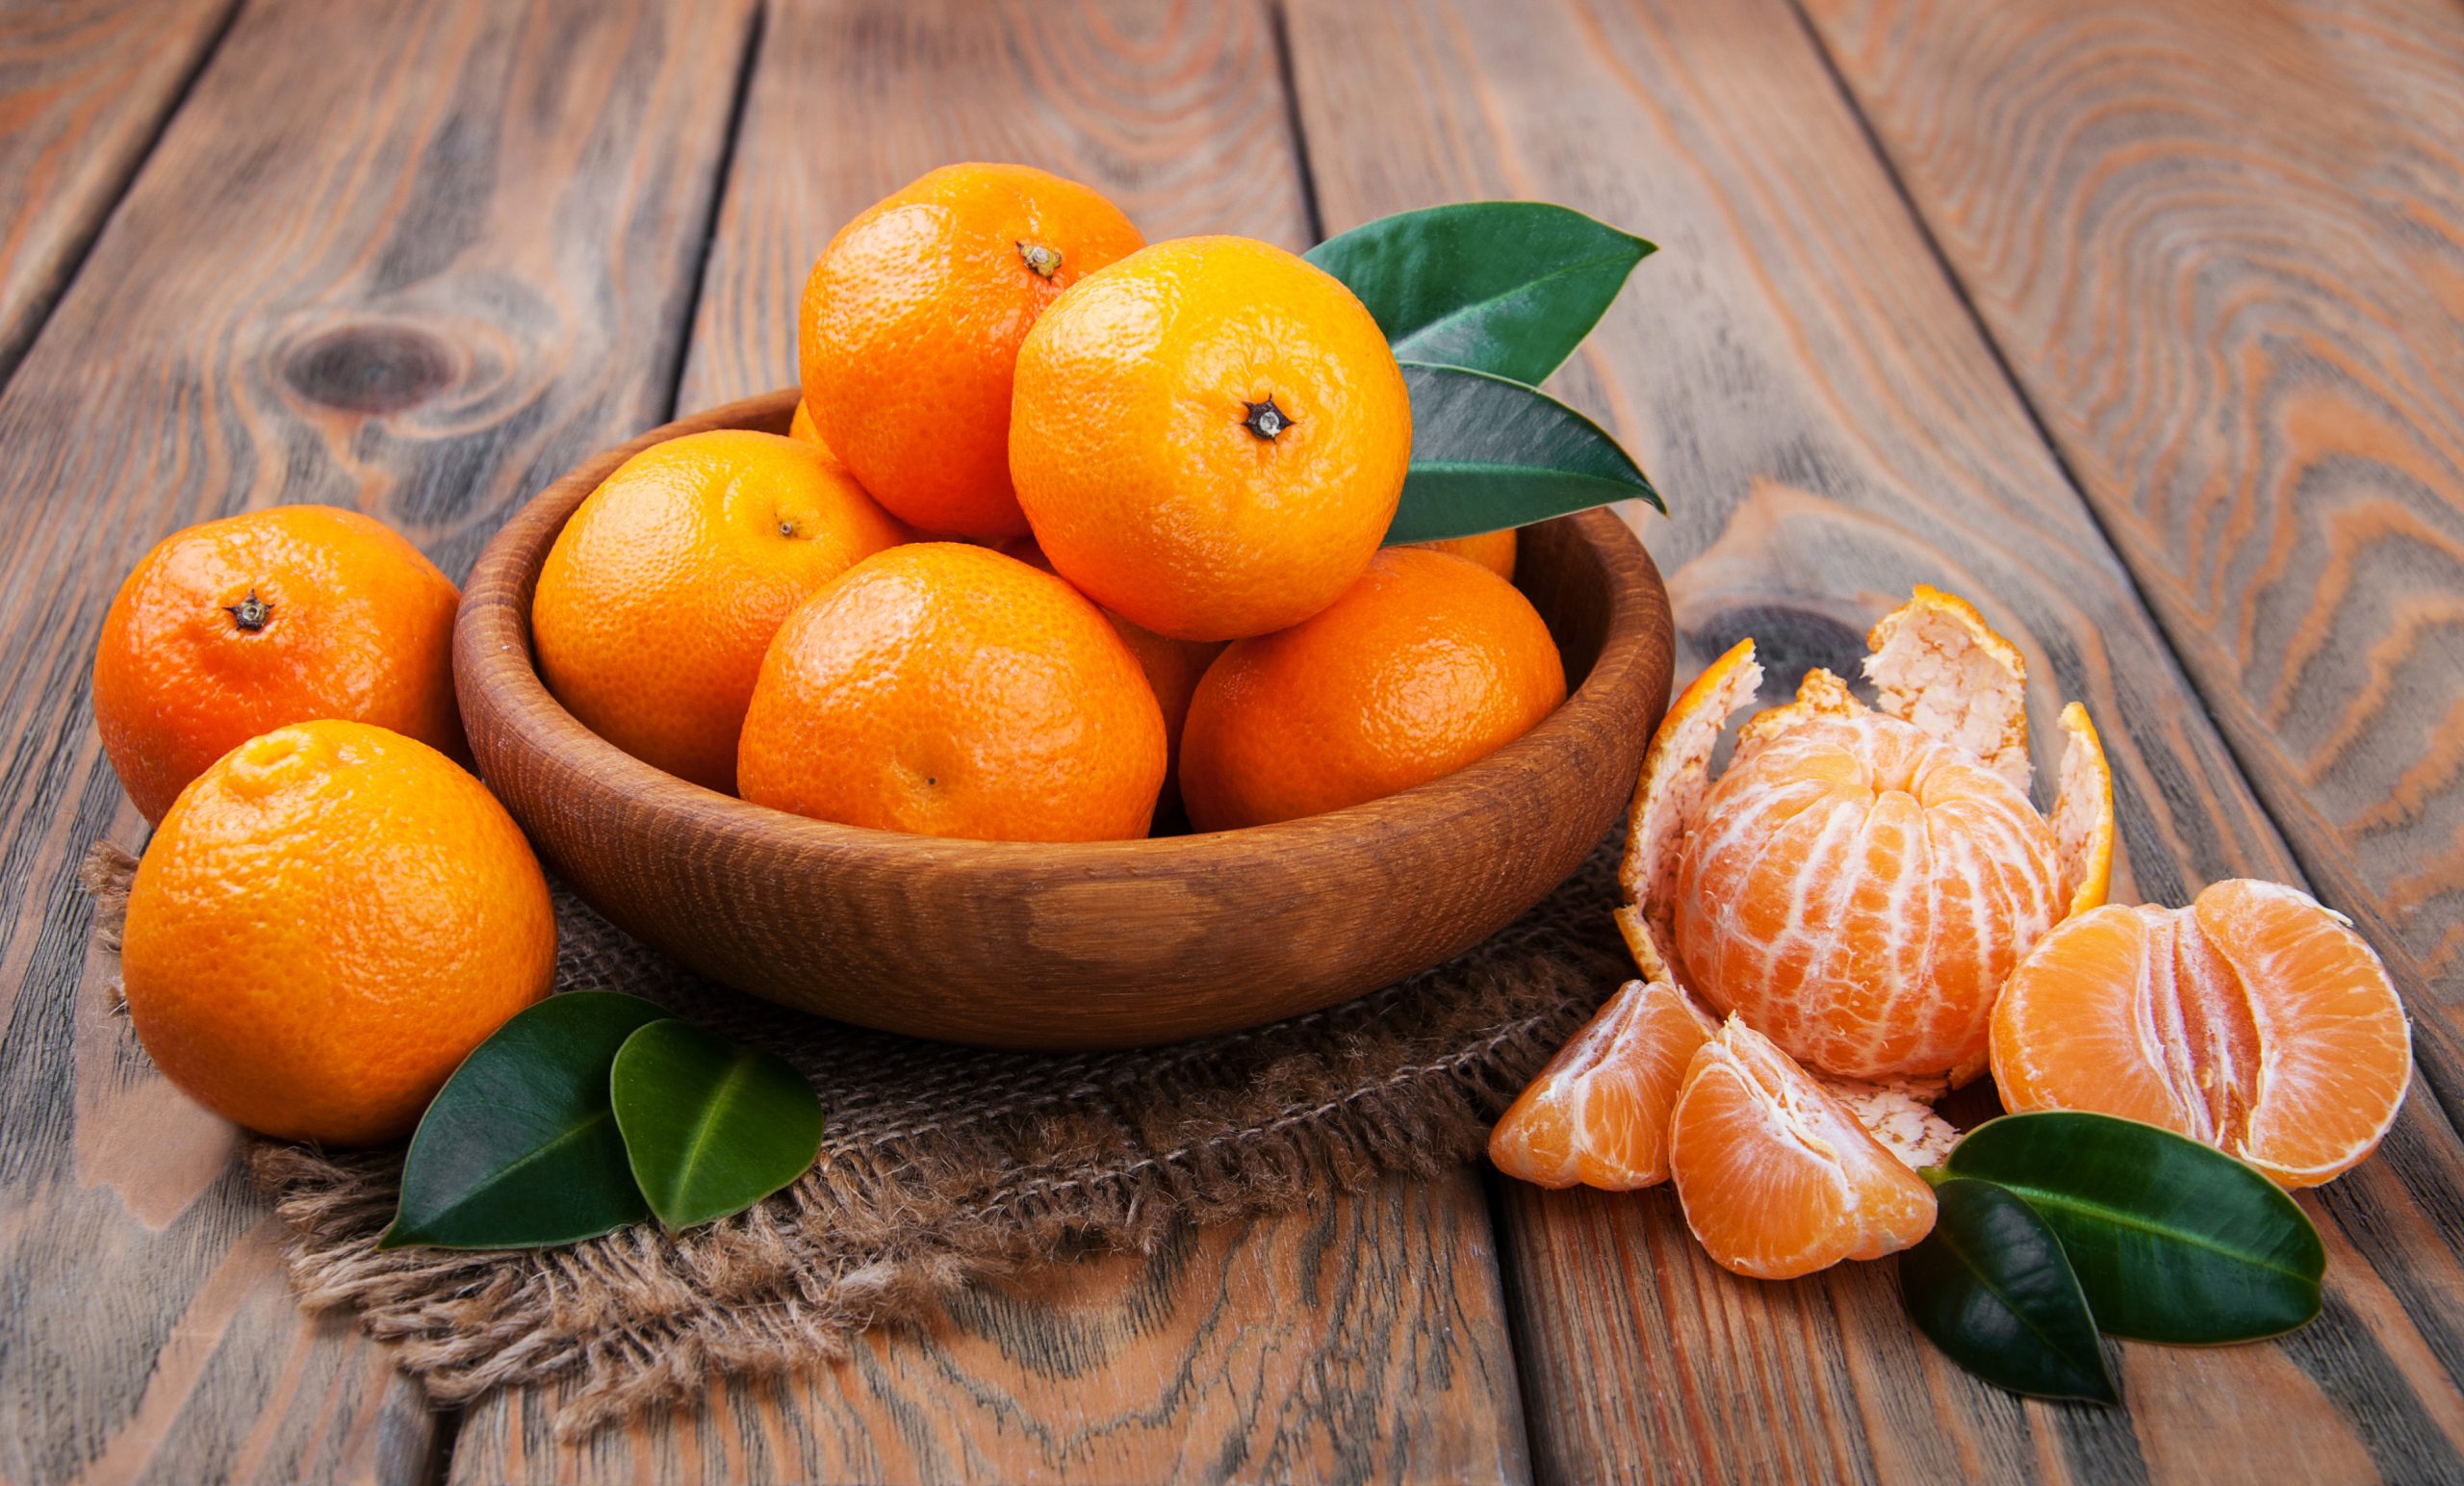 کاهش استرس با دمنوش پوست نارنگی